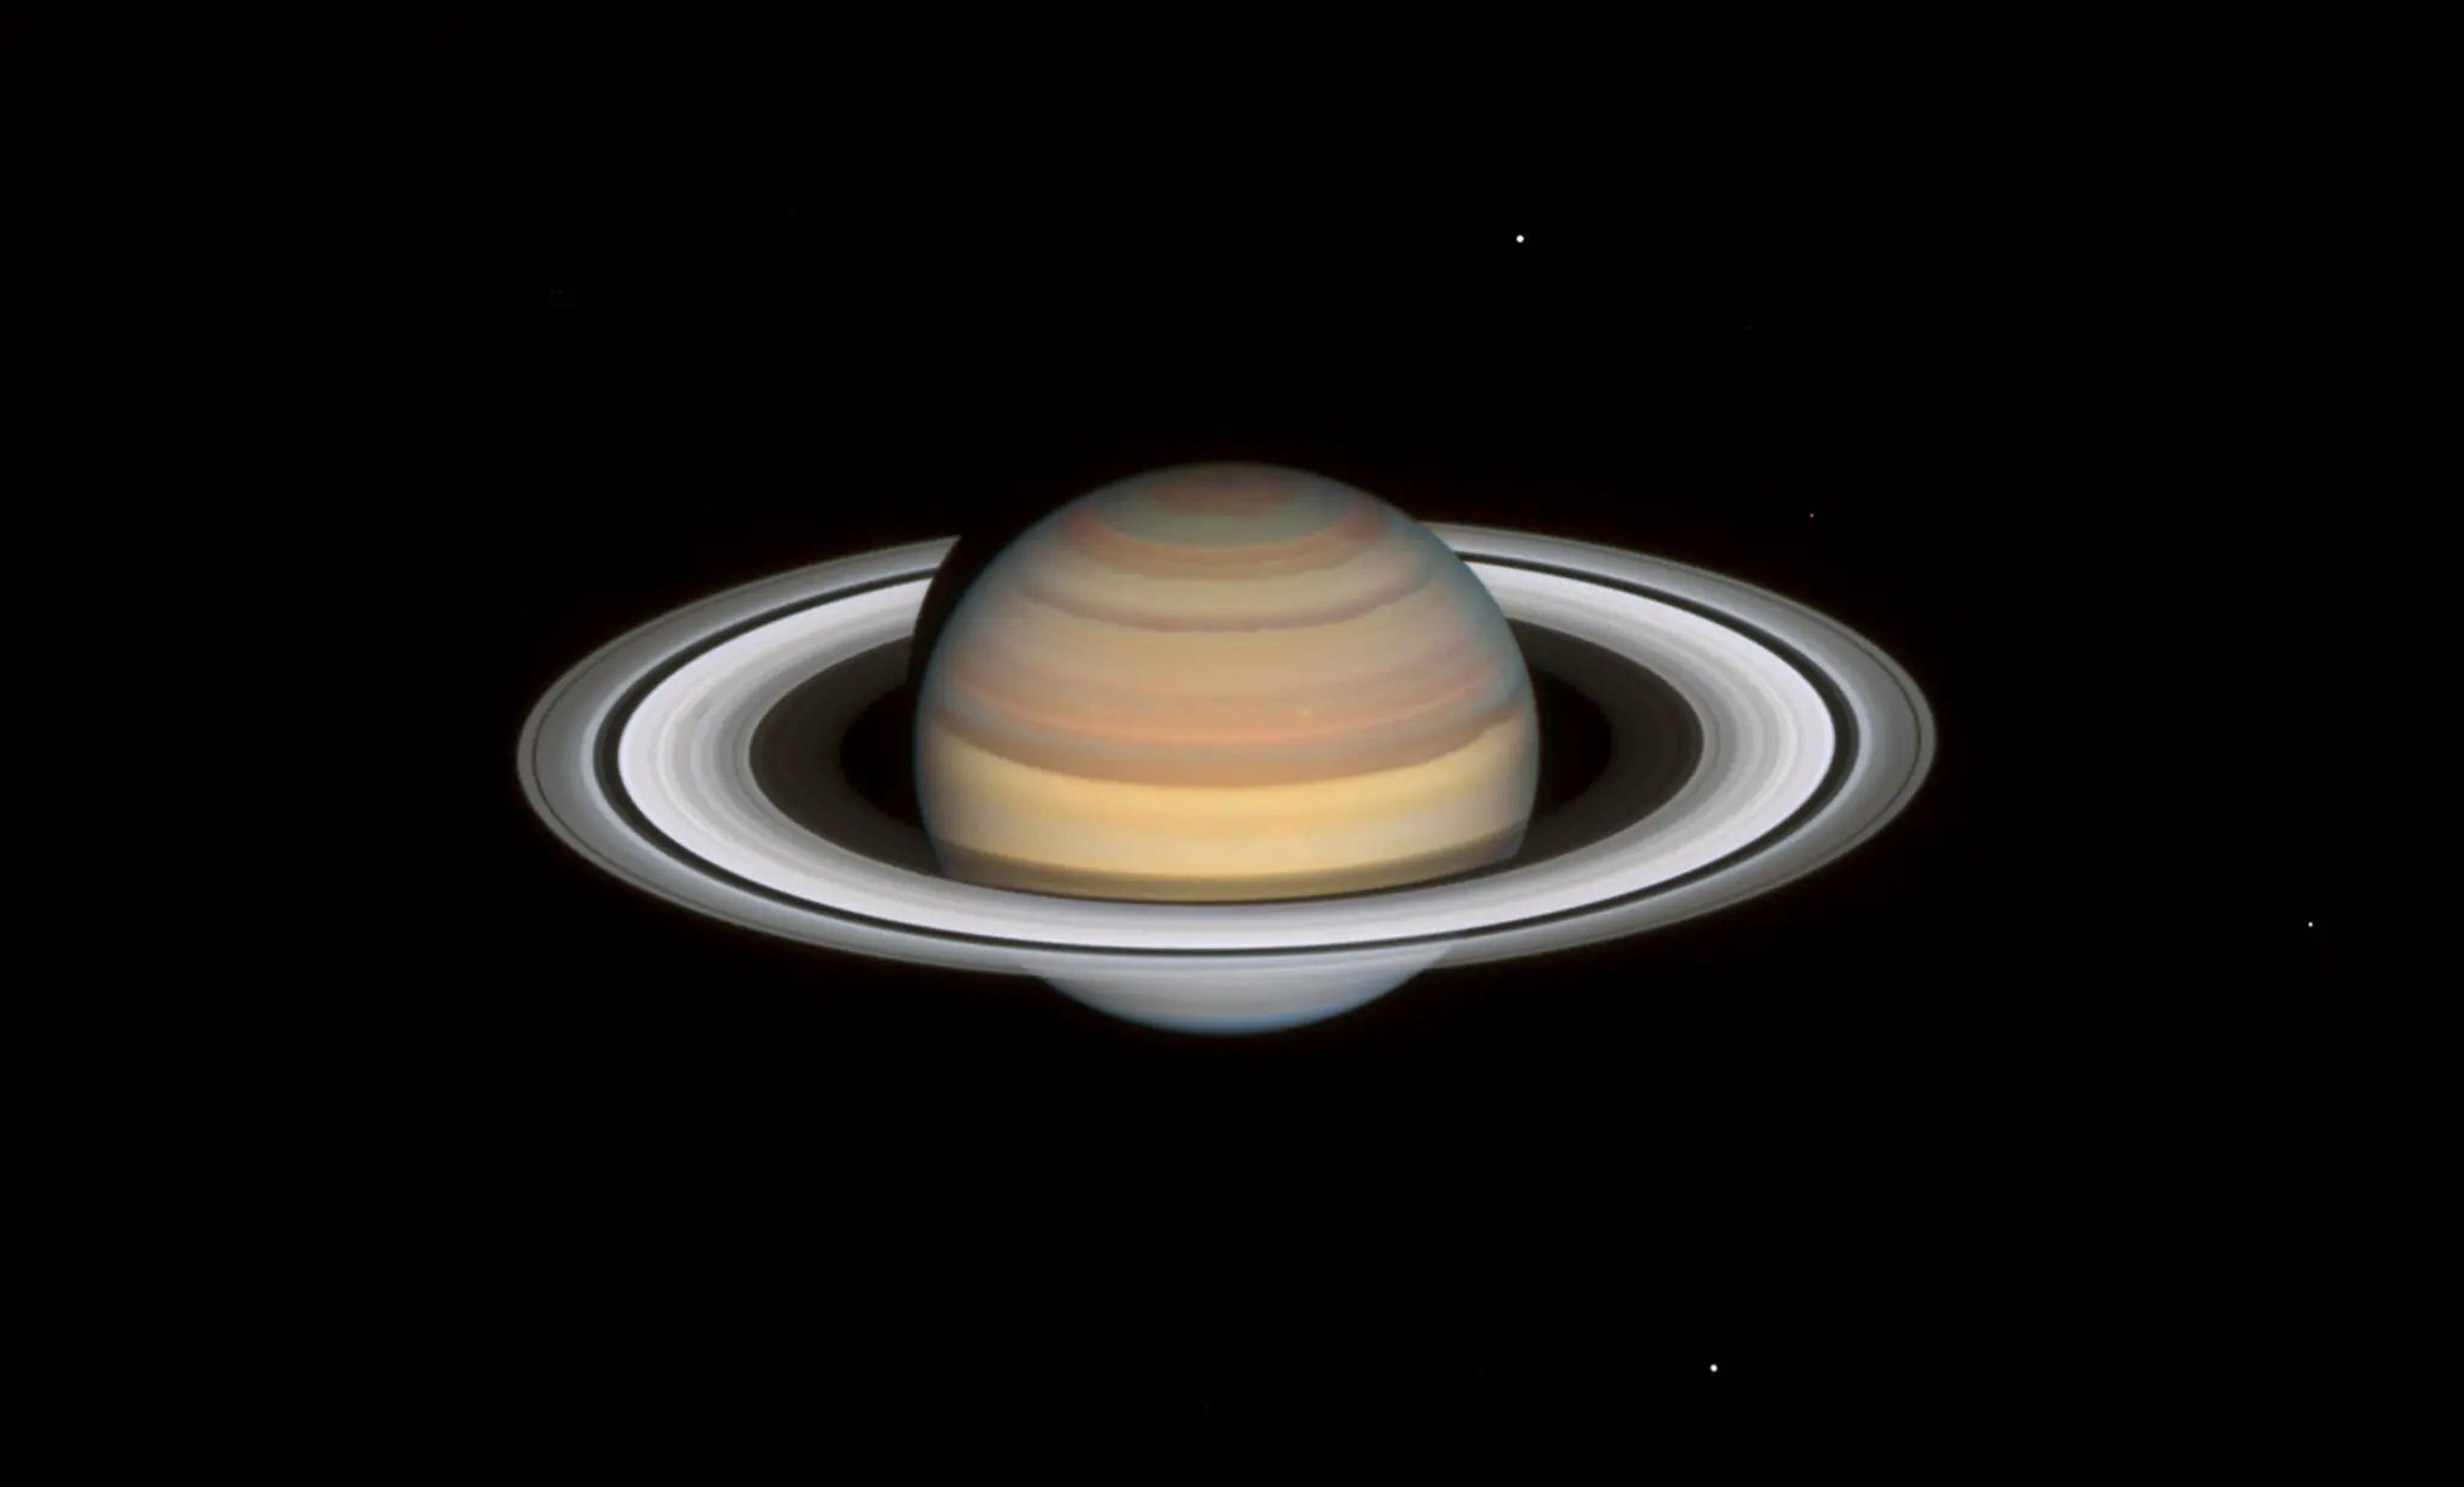 Fotografía reciente tomada por el telescopio Hubble de los anillos de Saturno.